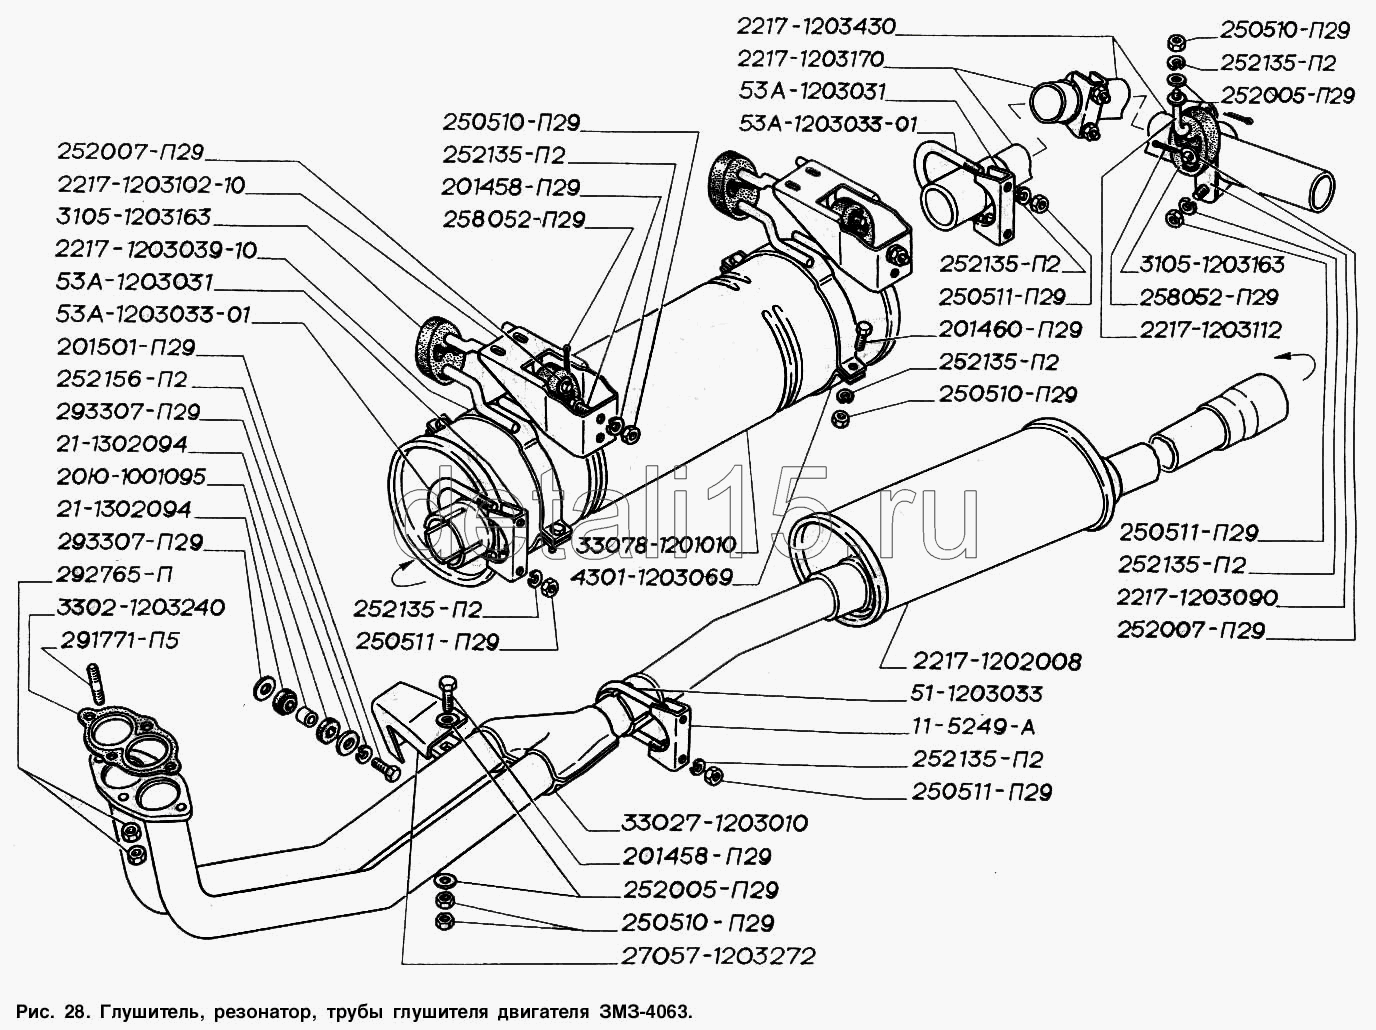 Двигатели и комплектующие ГАЗ - цены в каталоге АвтоДеталь52 НН